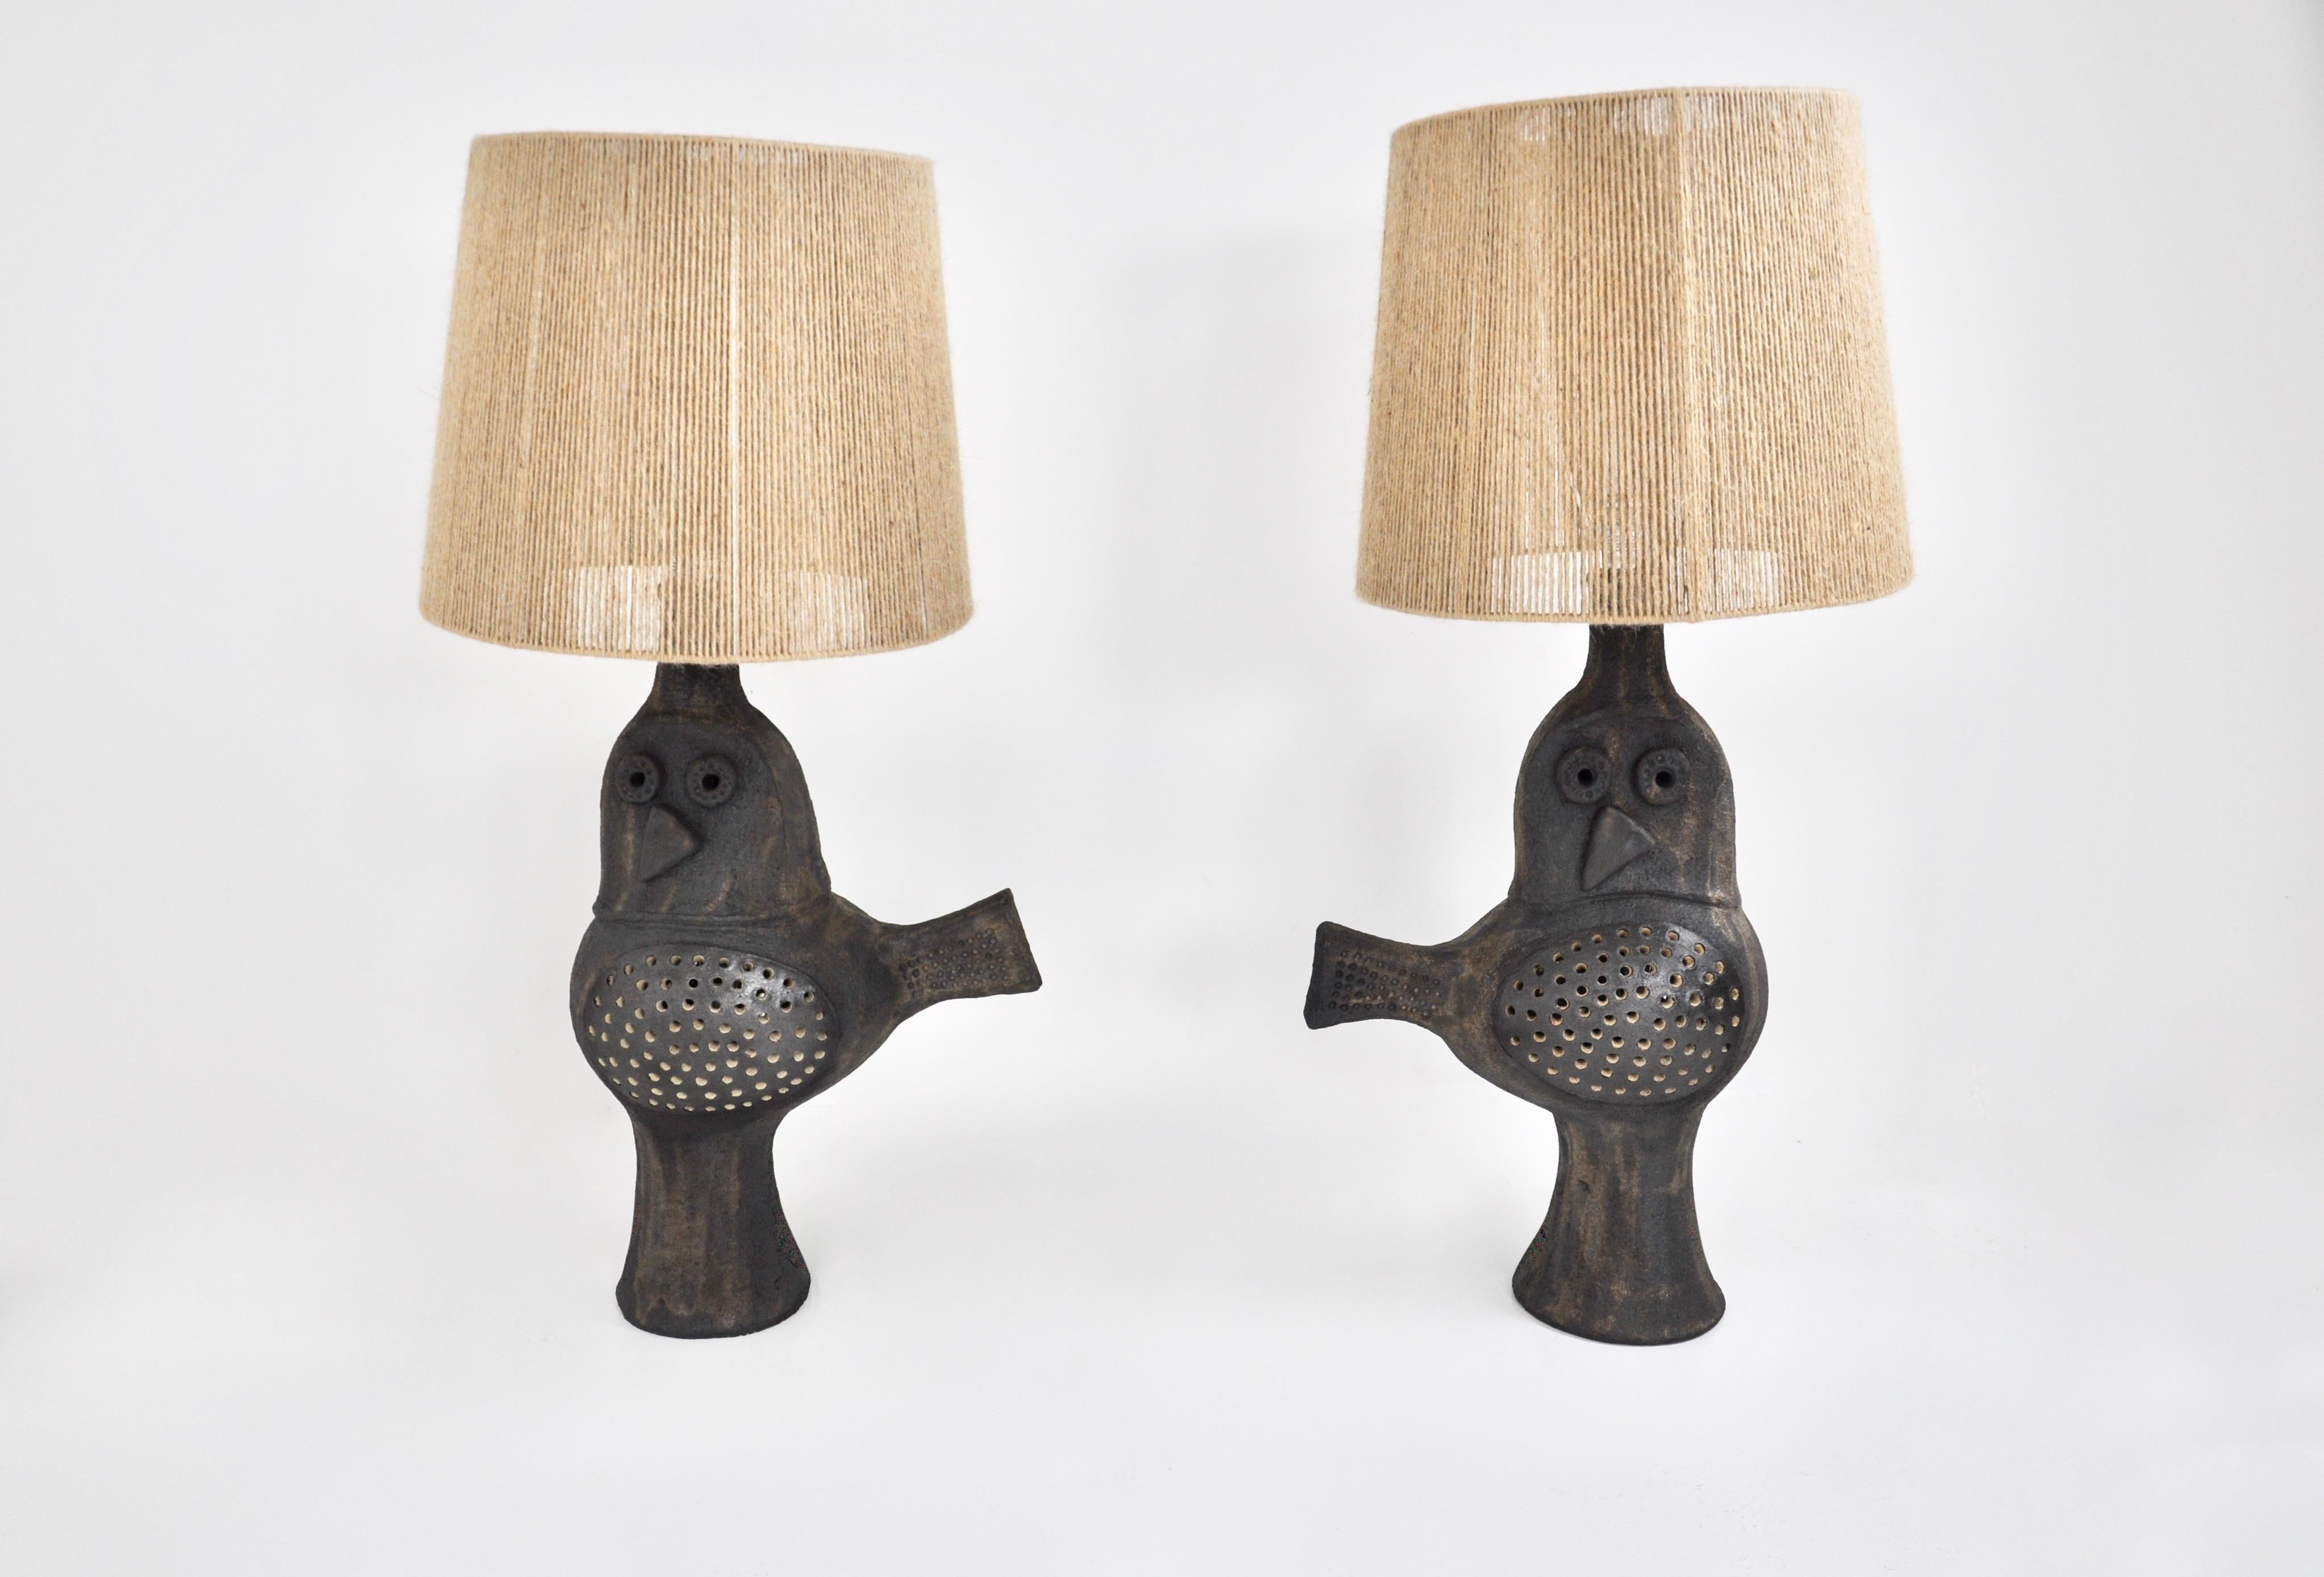 Ein Paar Keramiklampen von Dominique Pouchain. Gestempelt Dominique Pouchain (siehe Abbildung).